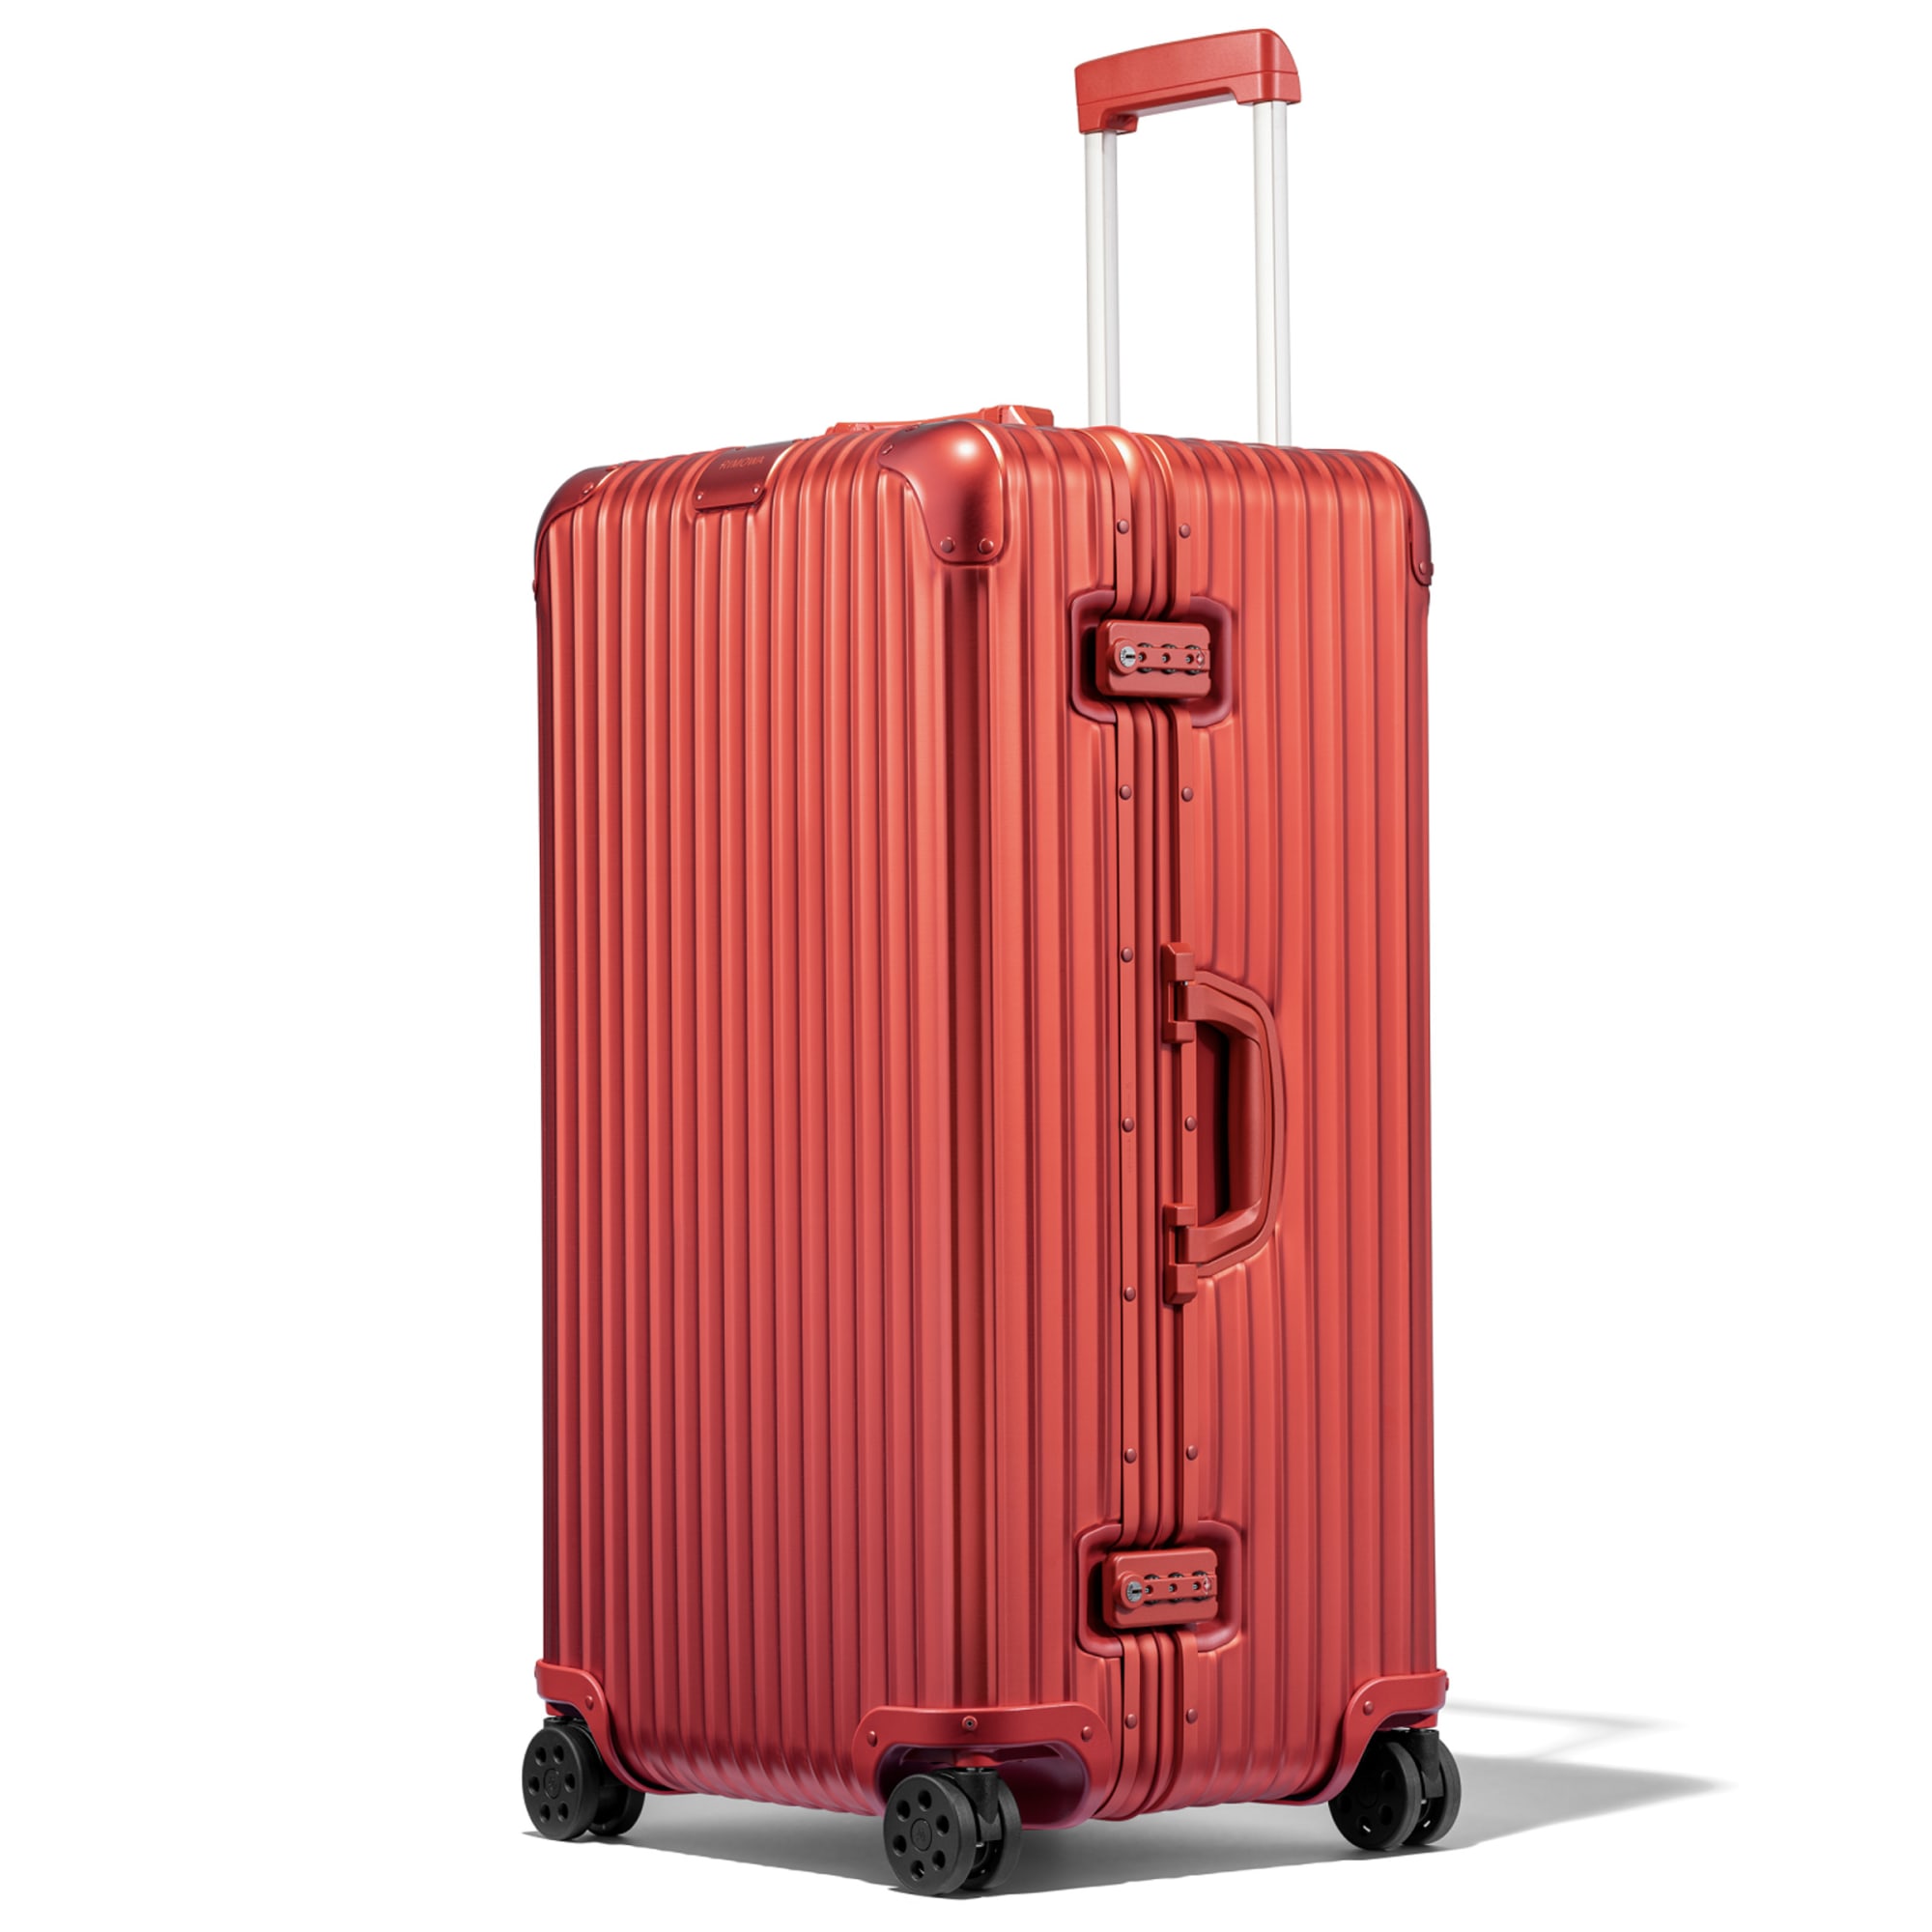 リモワ」のアルミニウム合金製スーツケースに地中海やトキに着想した新 